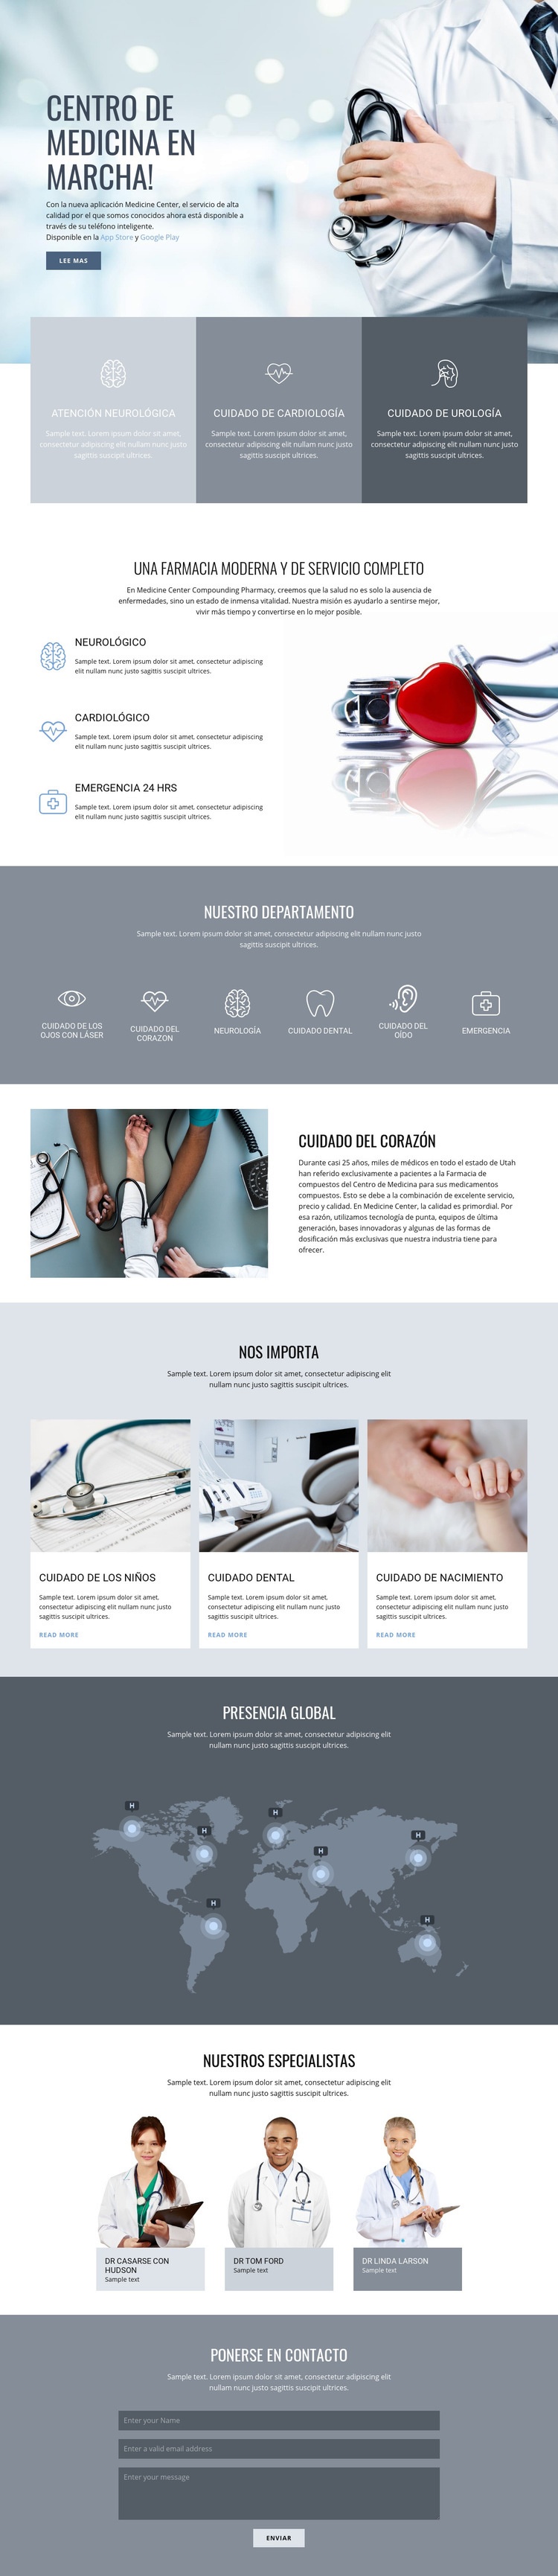 Centro de medicina de calidad Diseño de páginas web